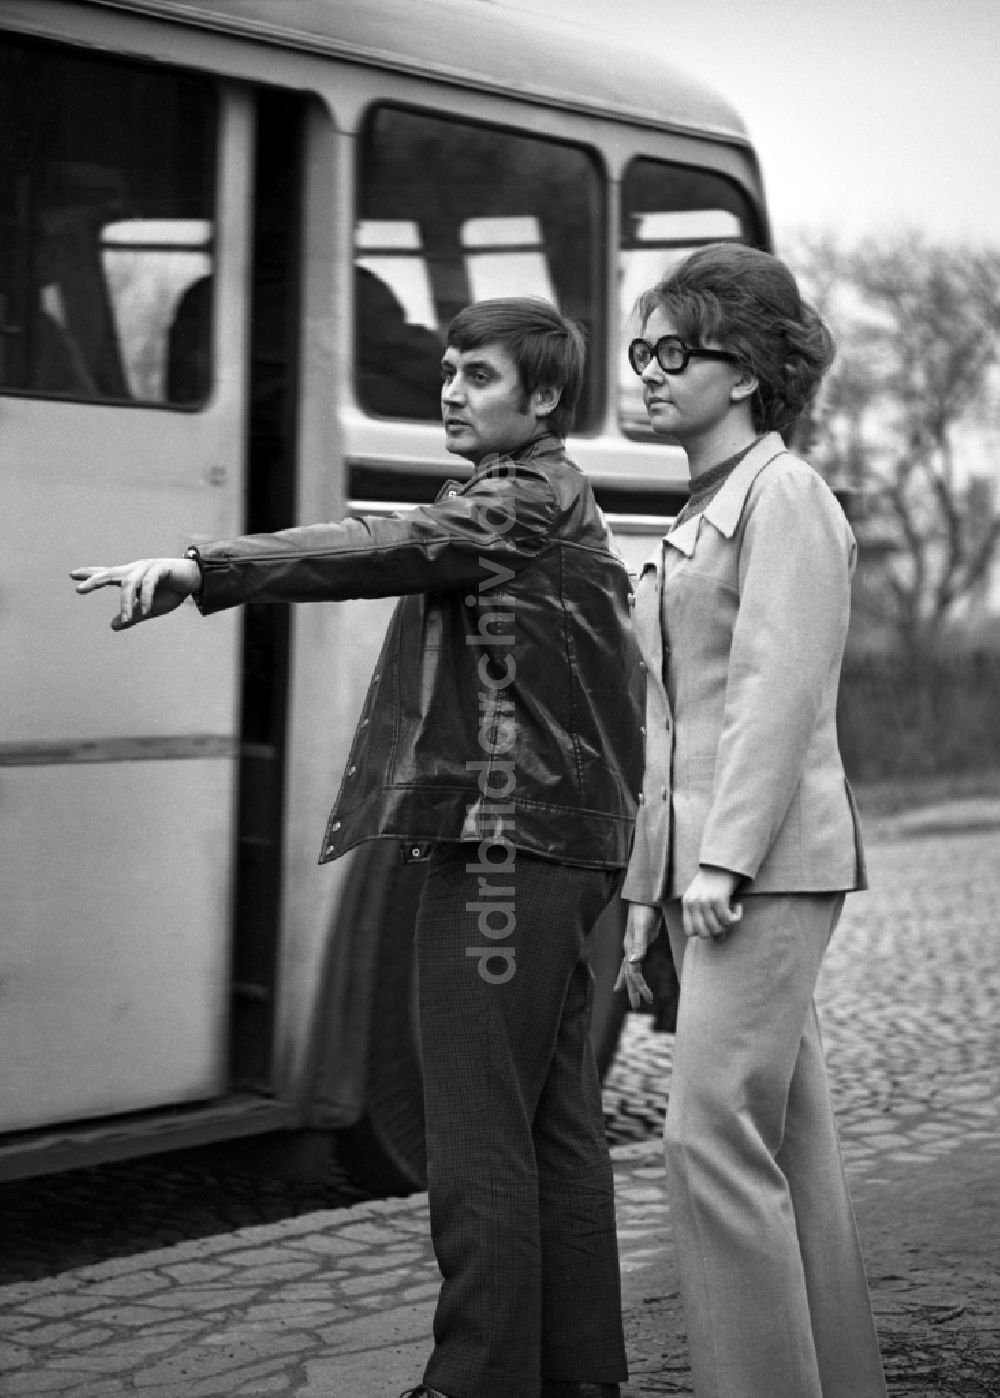 DDR-Fotoarchiv: Berlin - Bushaltestelle O-Bus oder auch Oberleitungsbus in Berlin, der ehemaligen Hauptstadt der DDR, Deutsche Demokratische Republik